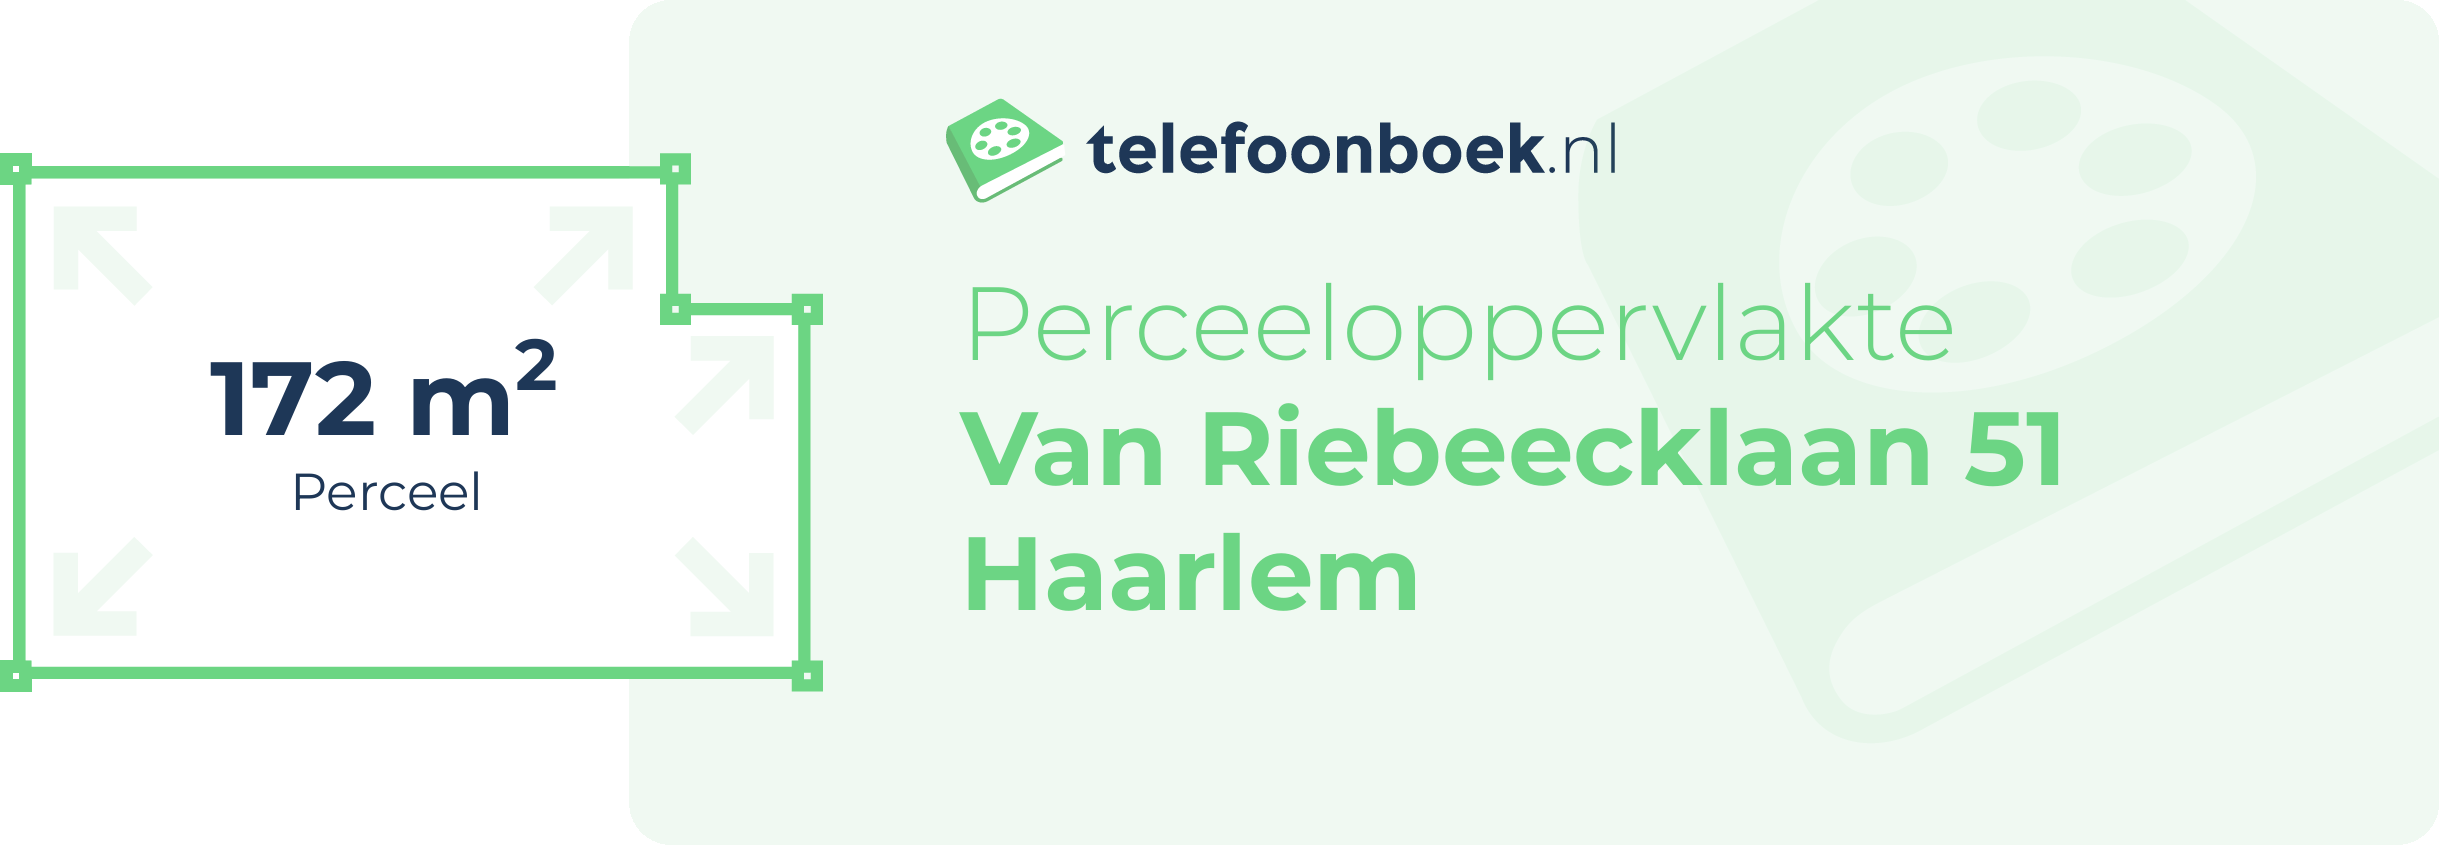 Perceeloppervlakte Van Riebeecklaan 51 Haarlem